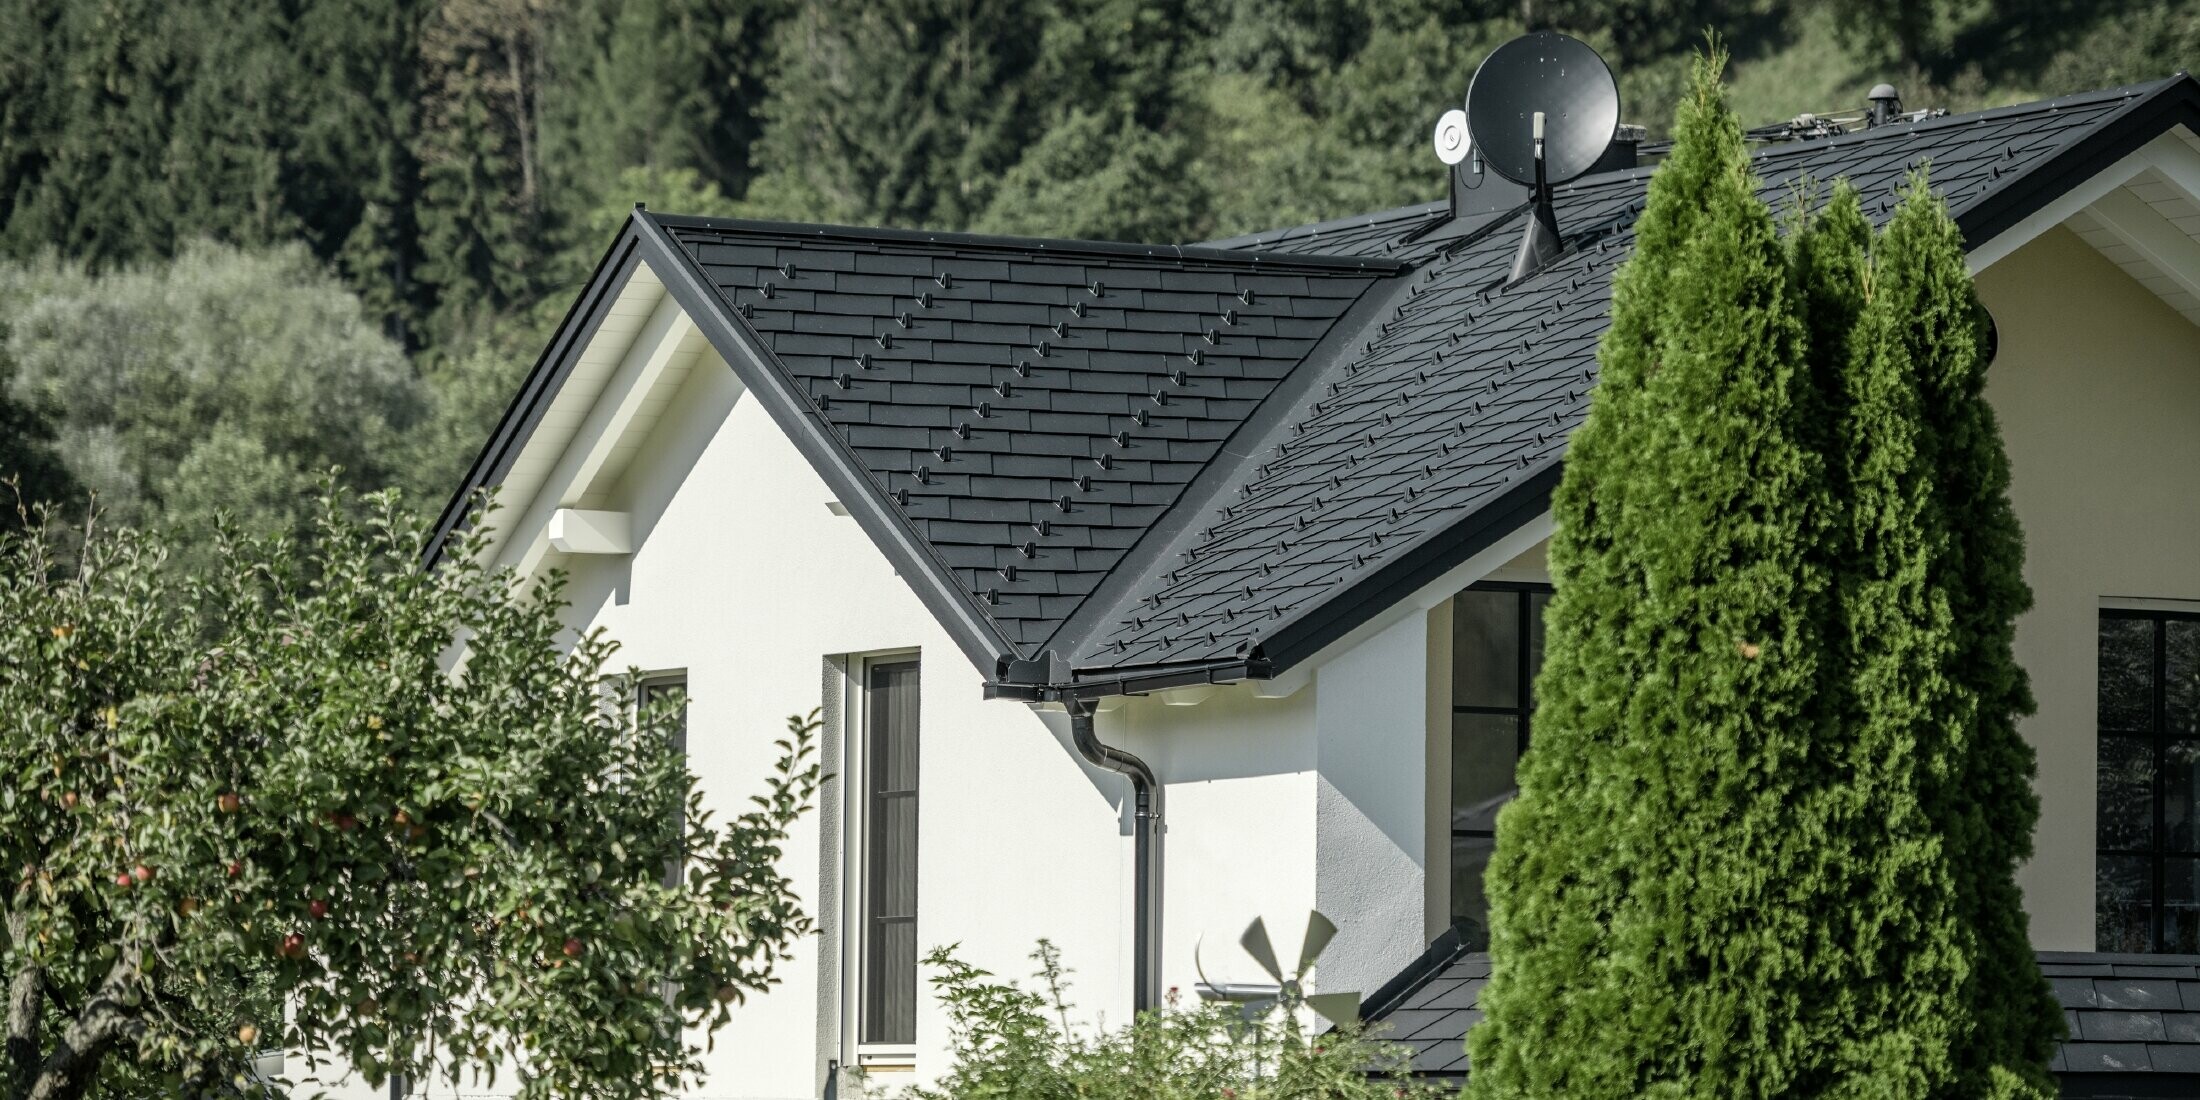 Rénovation du toit à l'aide de bardeaux PREFA en aluminium couleur P.10 noir, avec noue